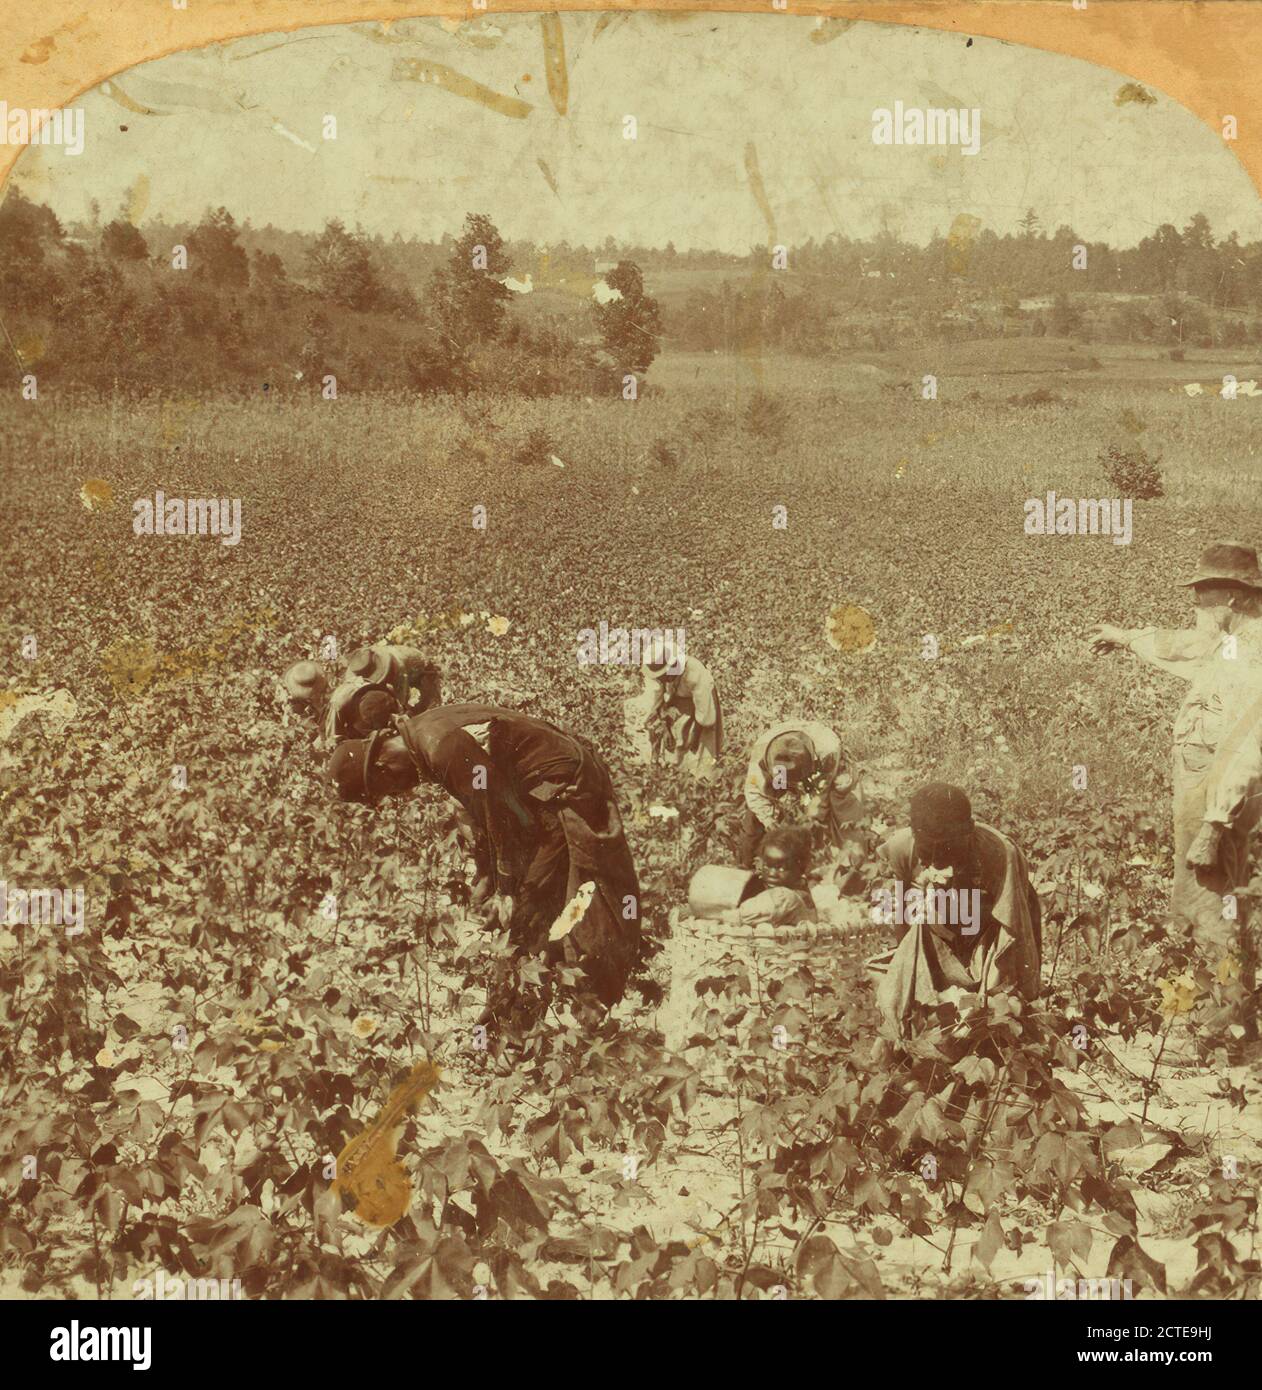 Kommissionierung Baumwolle., 1868, usa, amerika, amerika Ahnenarchiv Foto, USA faszinierende und seltene historische Bild. Stockfoto